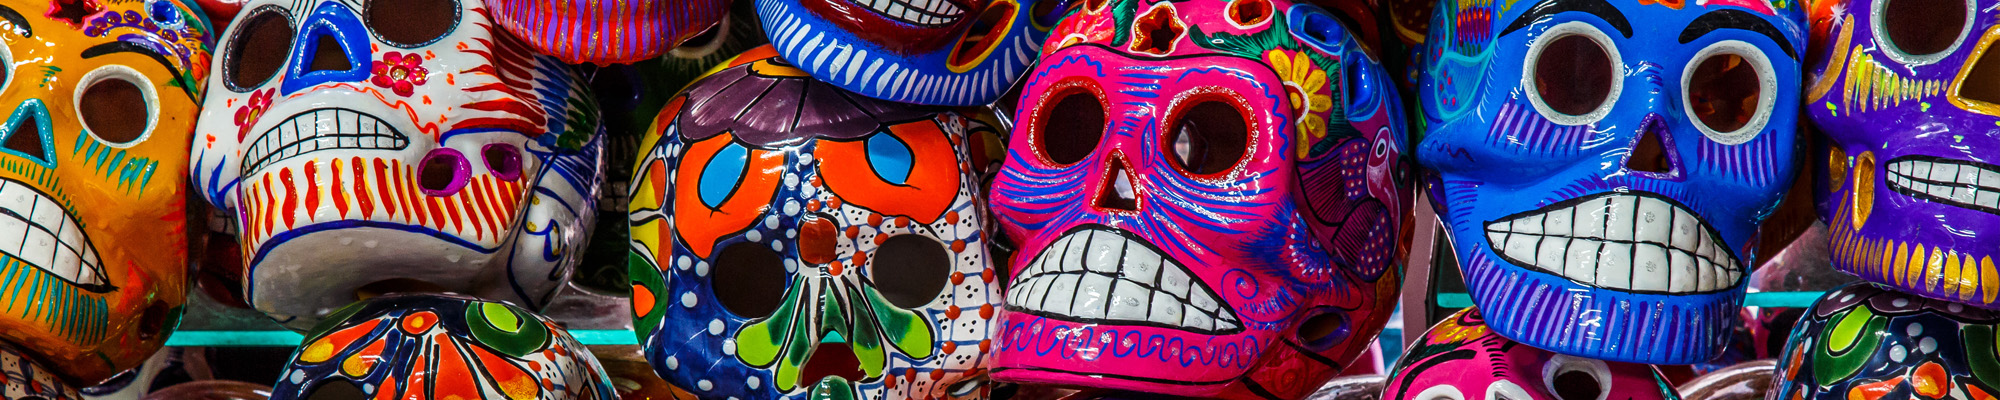 colorful ceramic skulls